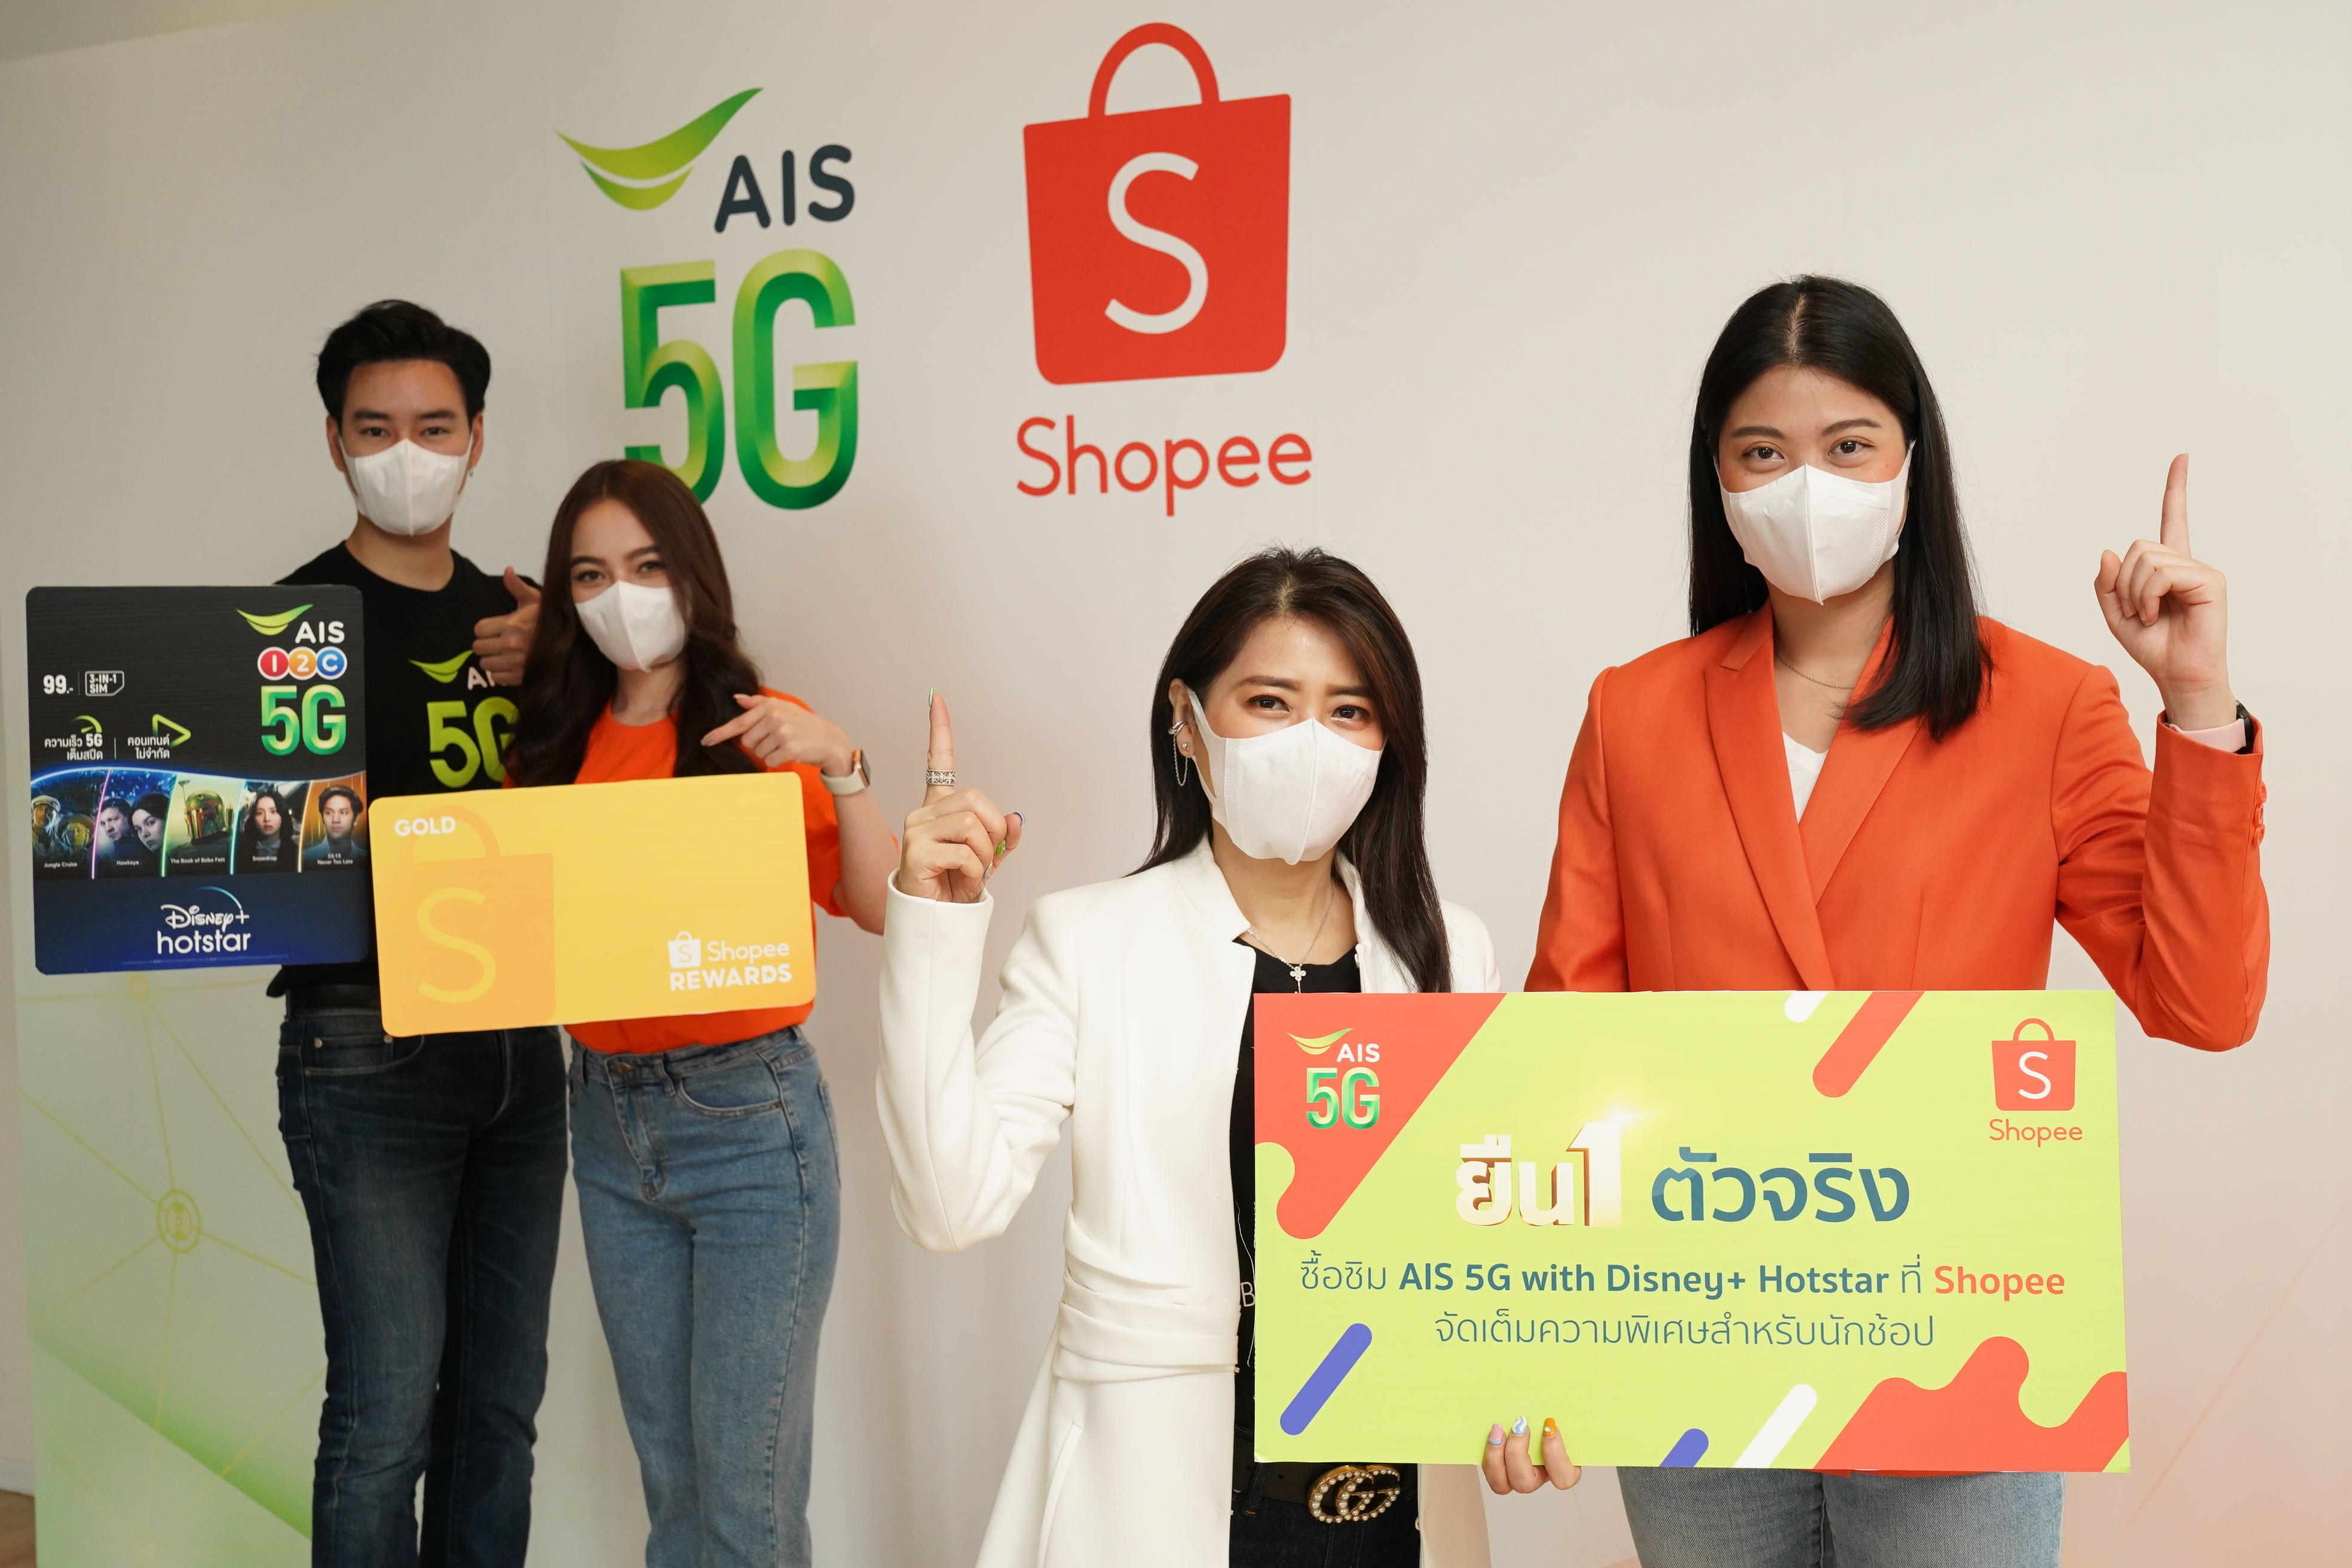 ยืน 1 ตัวจริง! AIS 5G ผนึก Shopee ยกระดับความสุขคนไทย ด้วย SIM AIS 5G Disney+ Hotstar